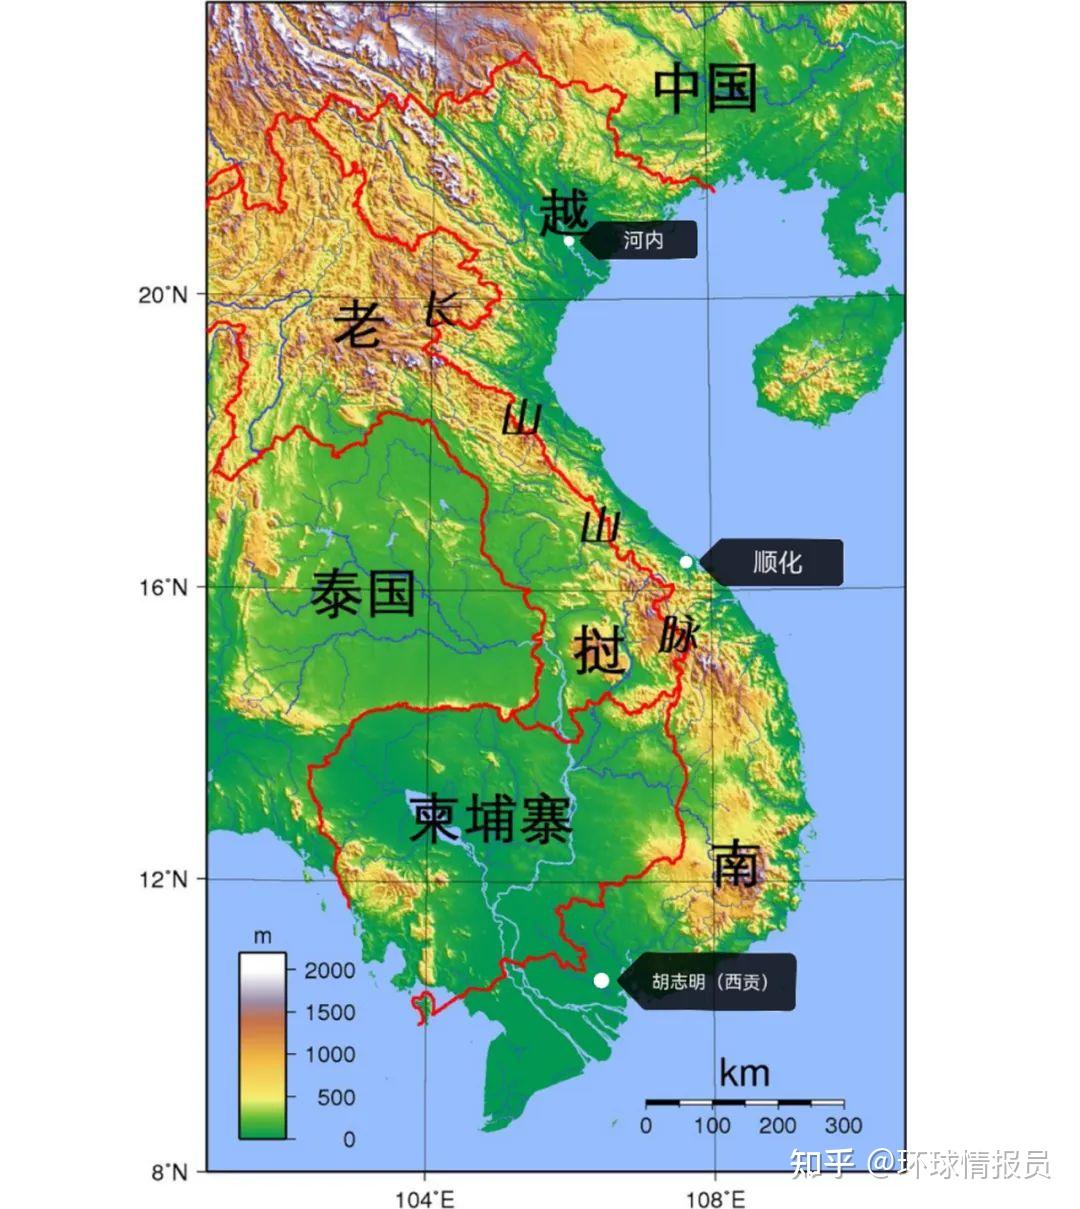 越南卫星影像地图 - 越南地图 - 地理教师网